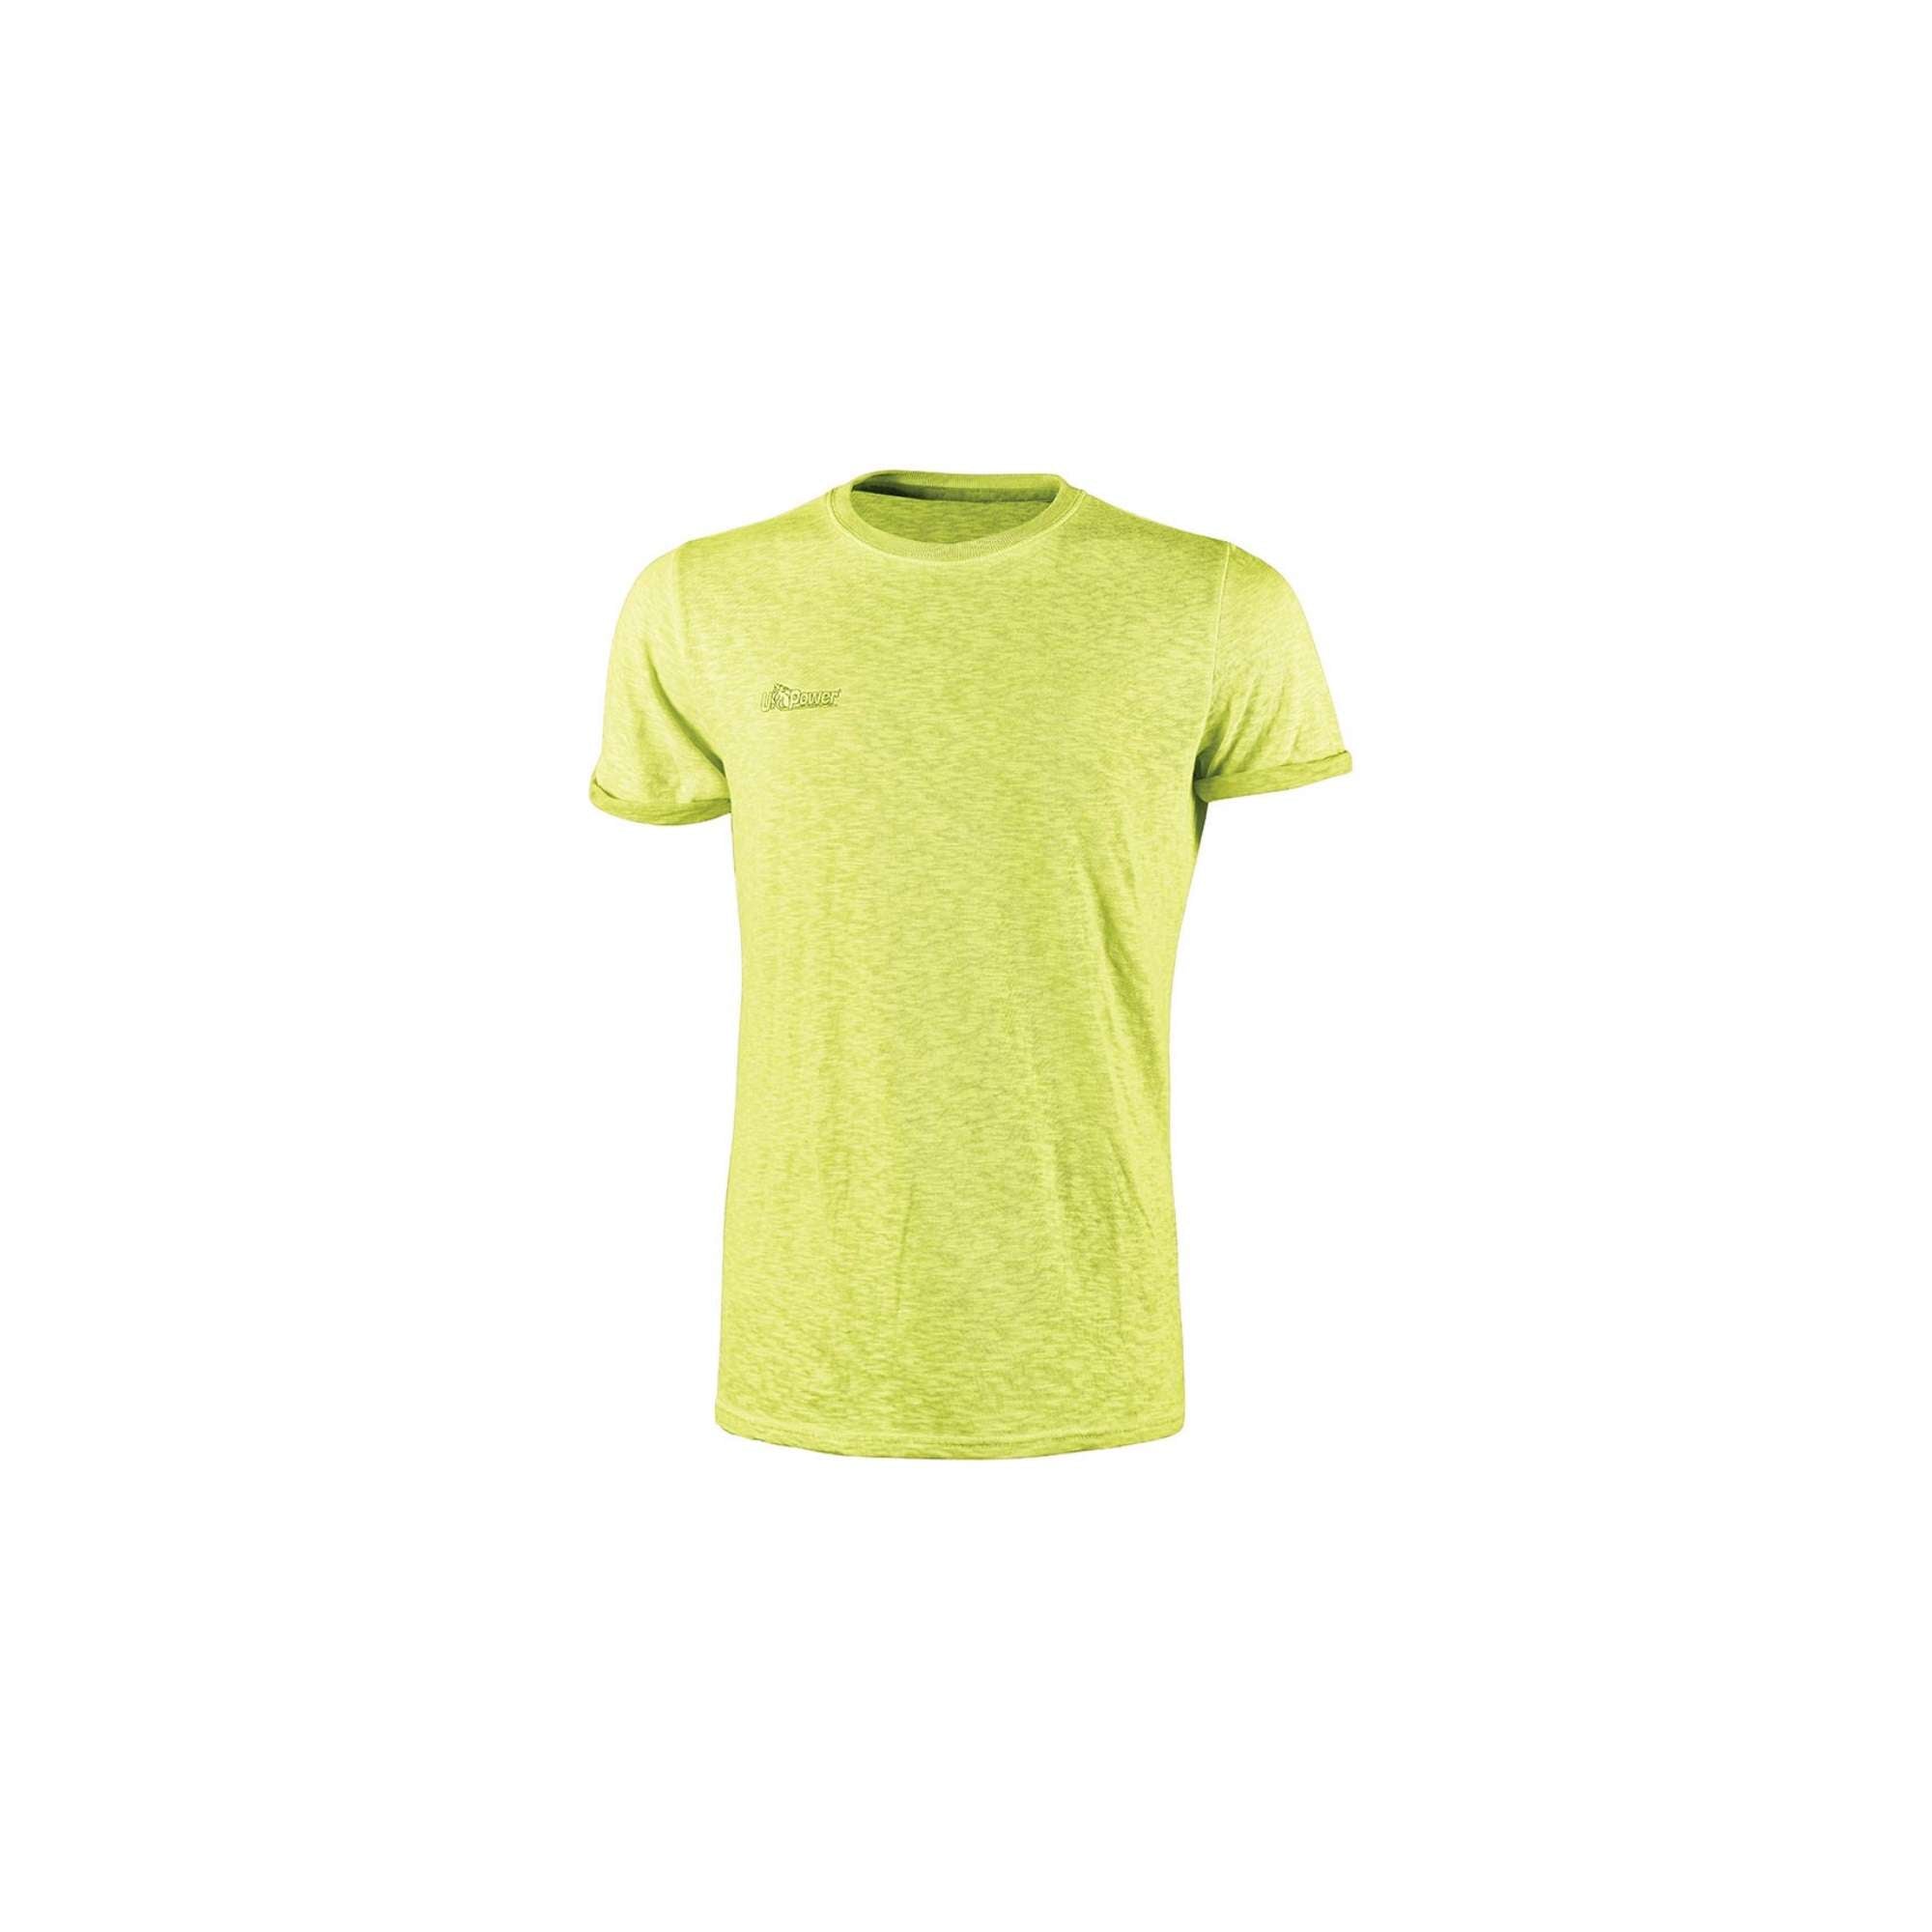 T-Shirt yellow fluo - U-Power EY195YF